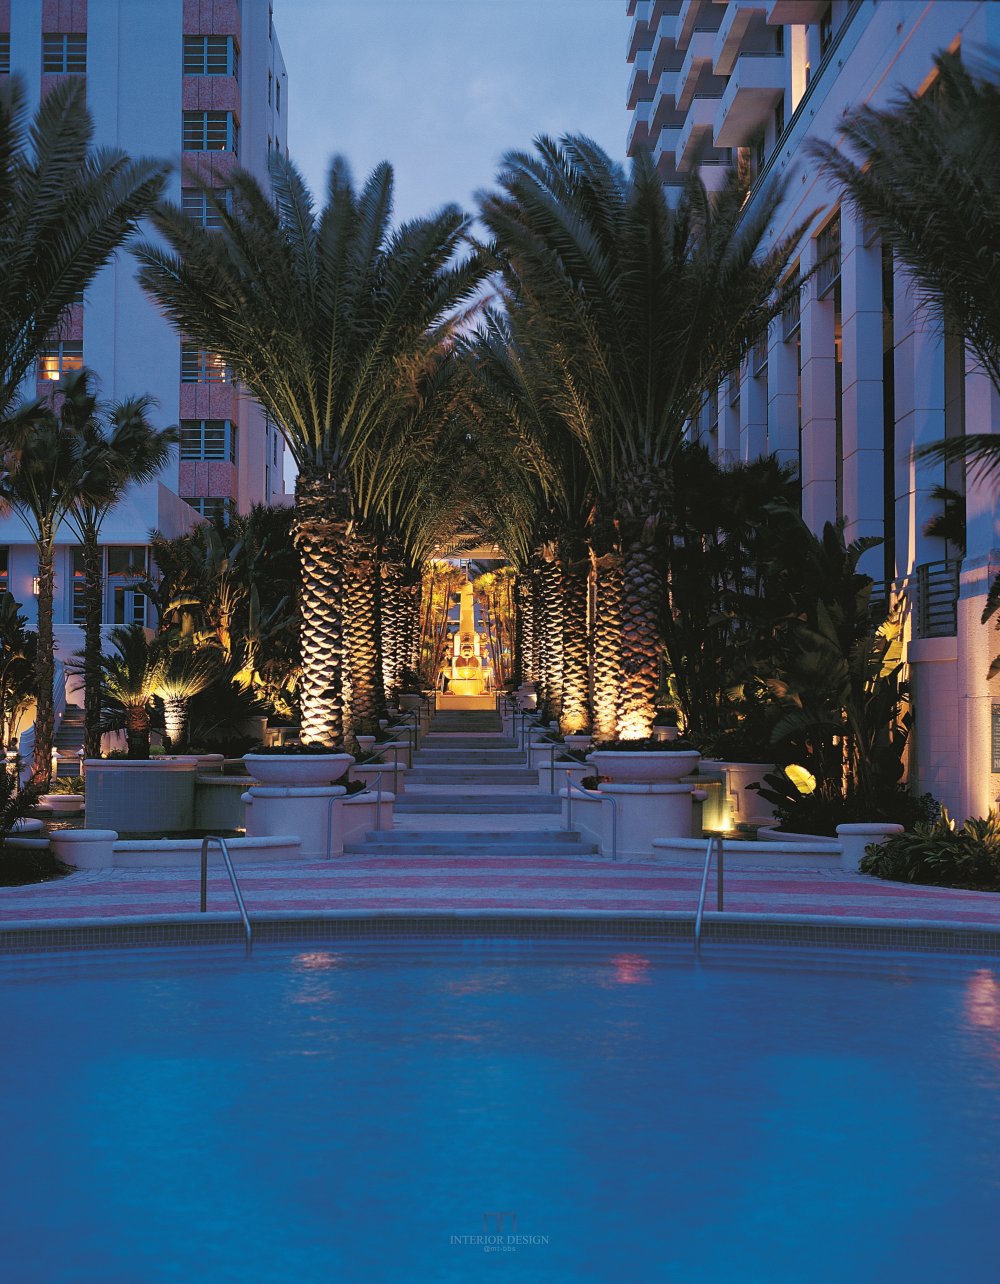 迈阿密罗斯海滩酒店 Loews Miami Beach Hotel_53742196-H1-MBH854.jpg